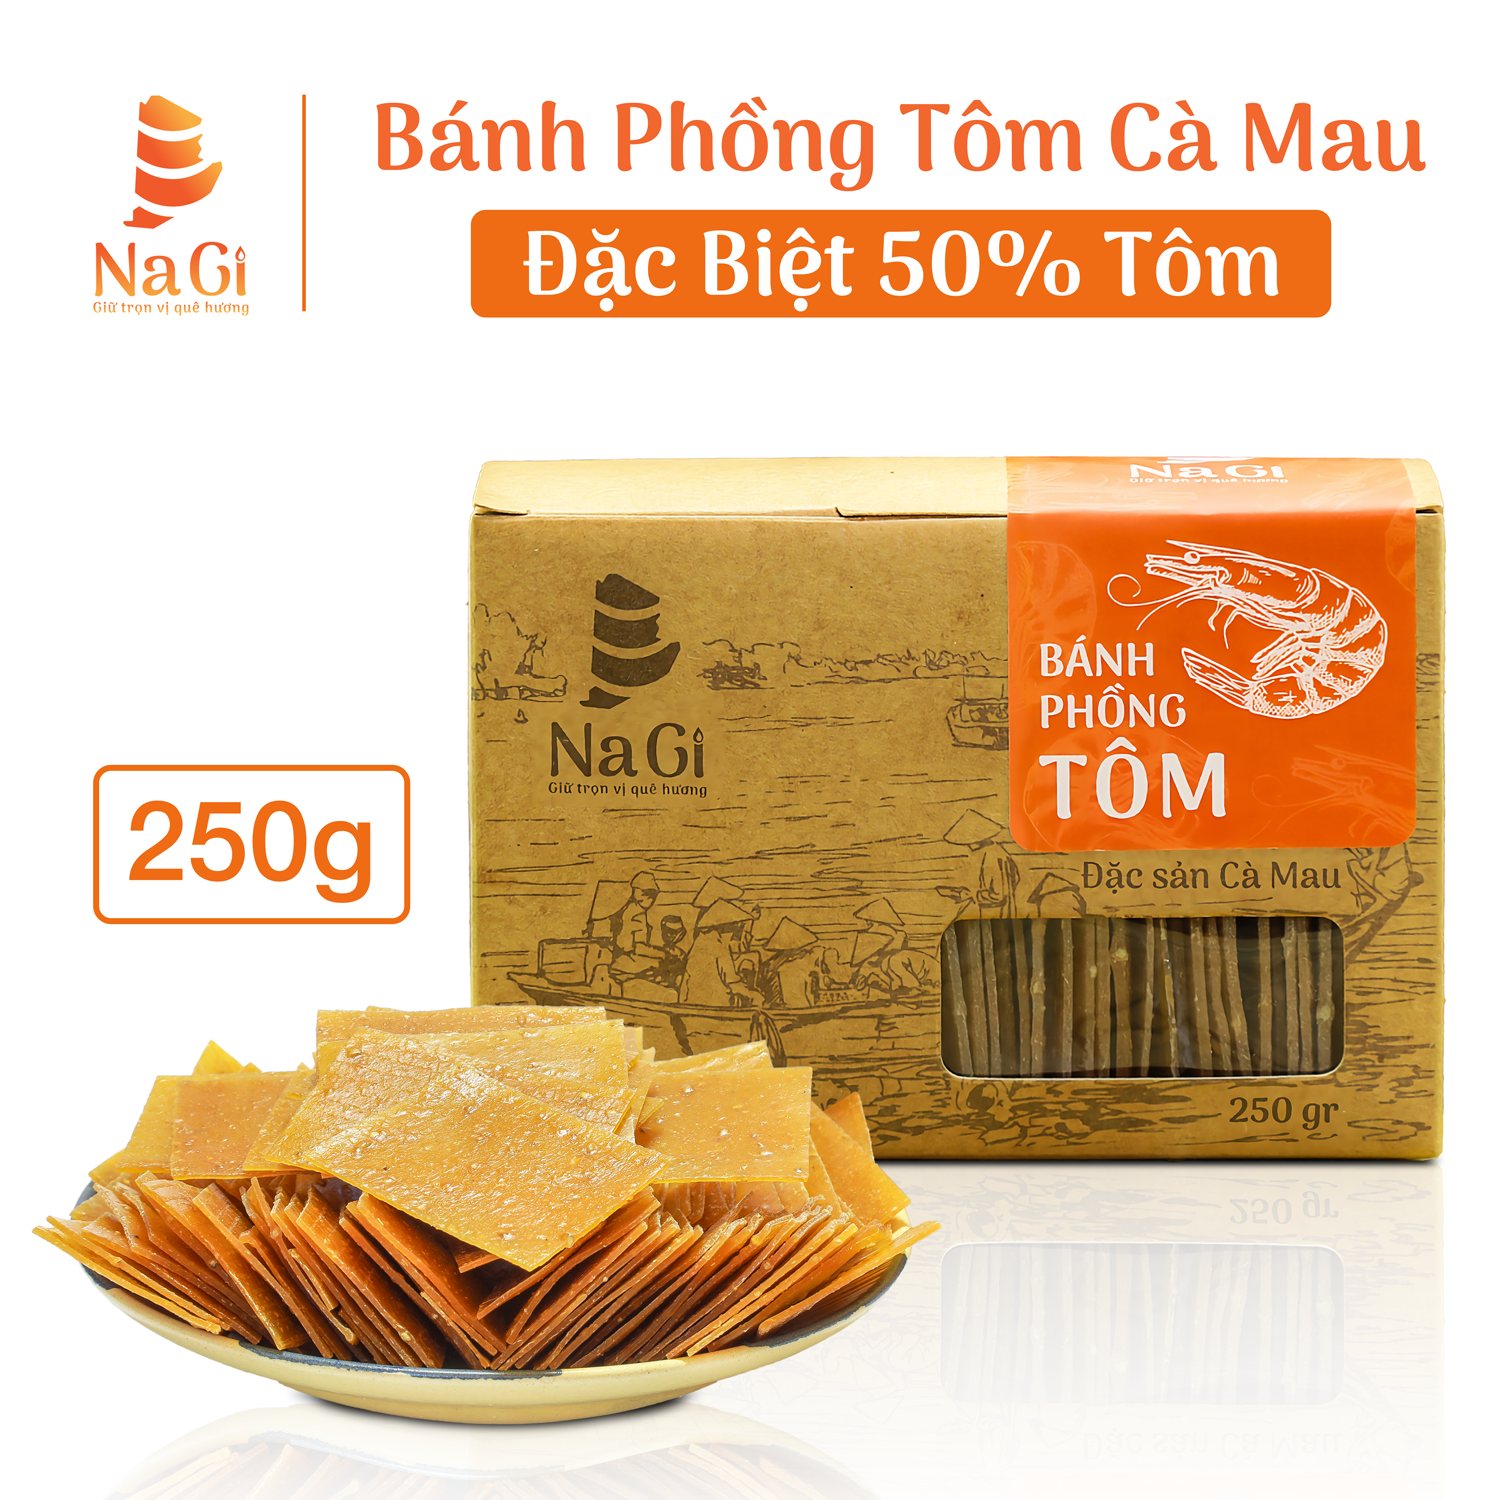 Bánh Phồng Tôm - Loại đặc biệt 50% Tôm, Đặc sản Năm Căn - Cà Mau, Thương hiệu NaGi